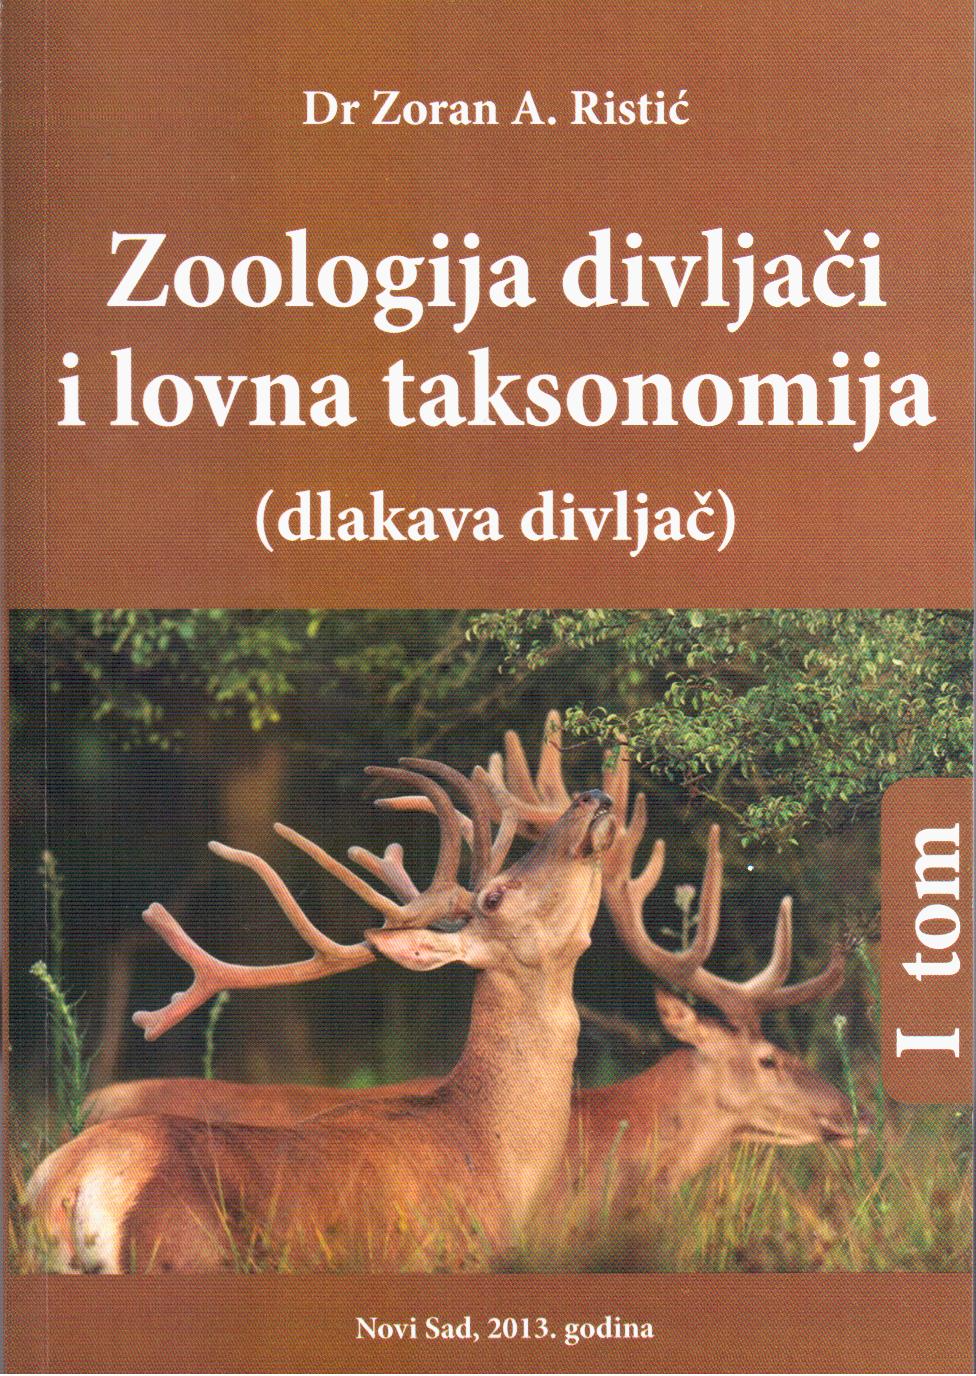 Knjiga "Zoologija divljači i lovna taksonomija (dlakava divljač)" (autor: Zoran A. Ristić)